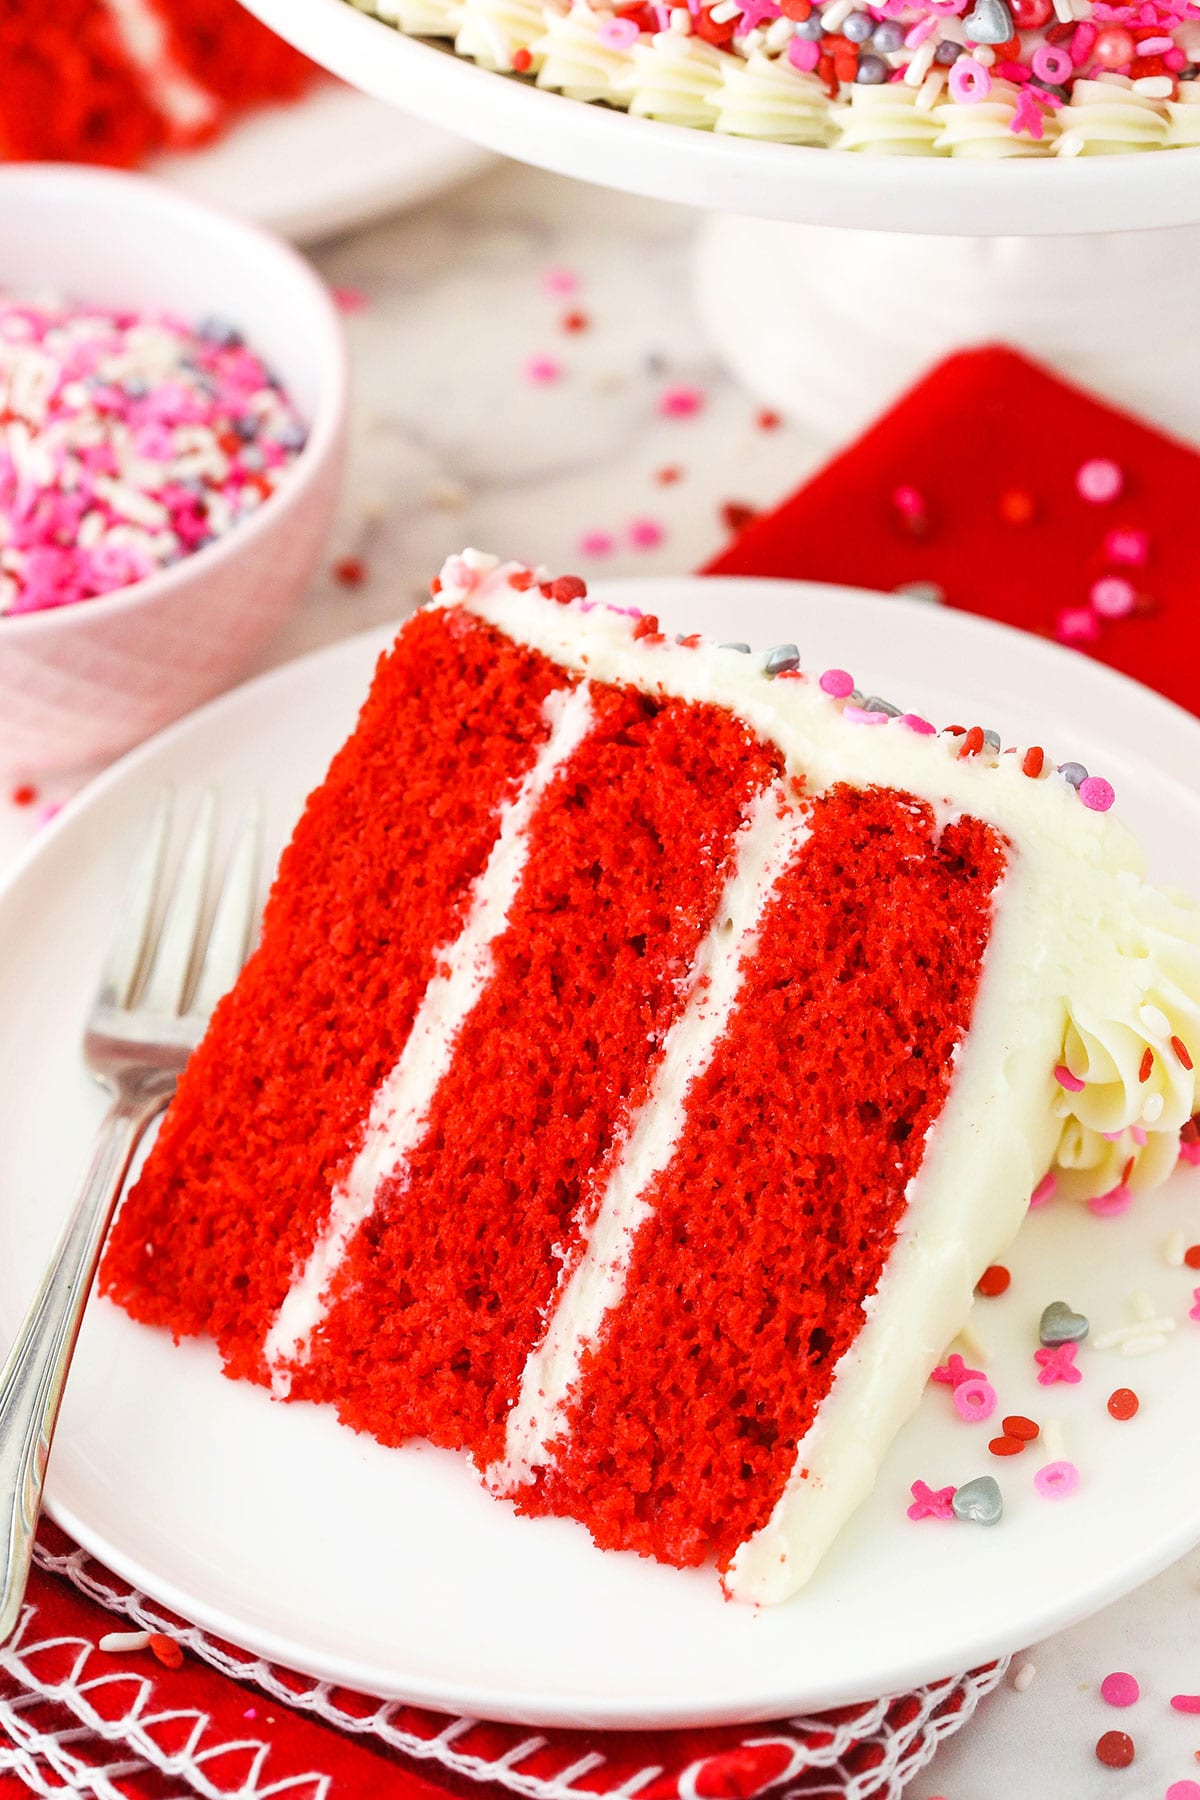 32389 Red Velvet Cake Images Stock Photos  Vectors  Shutterstock